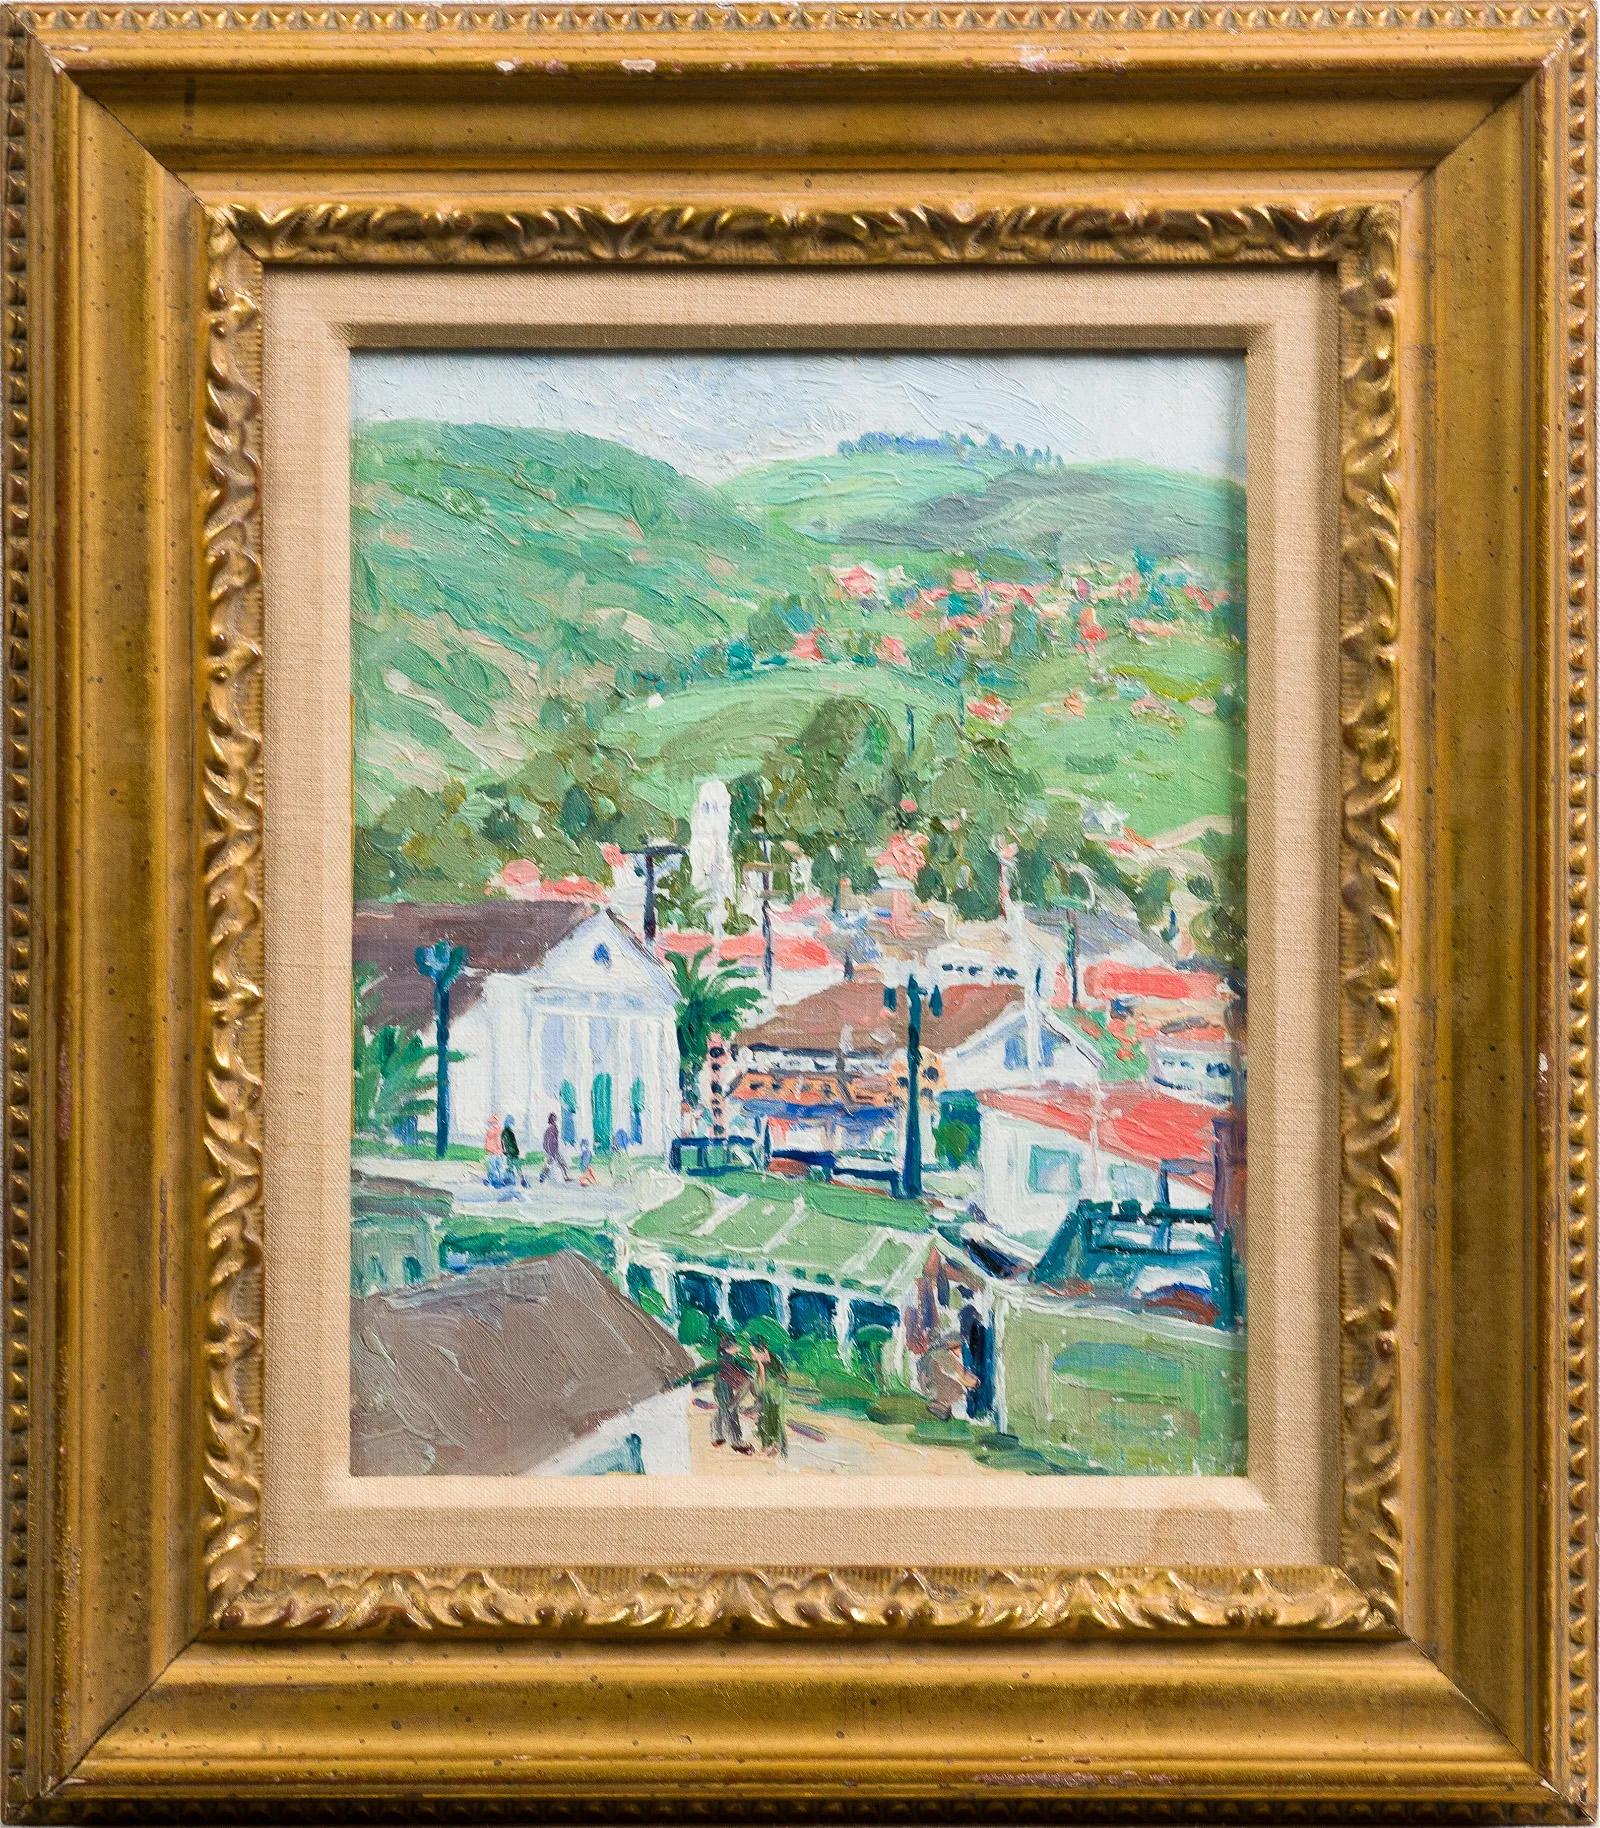 Landscape Painting Unknown - Ancienne peinture à l'huile impressionniste européenne encadrée d'une ville de montagne tropicale